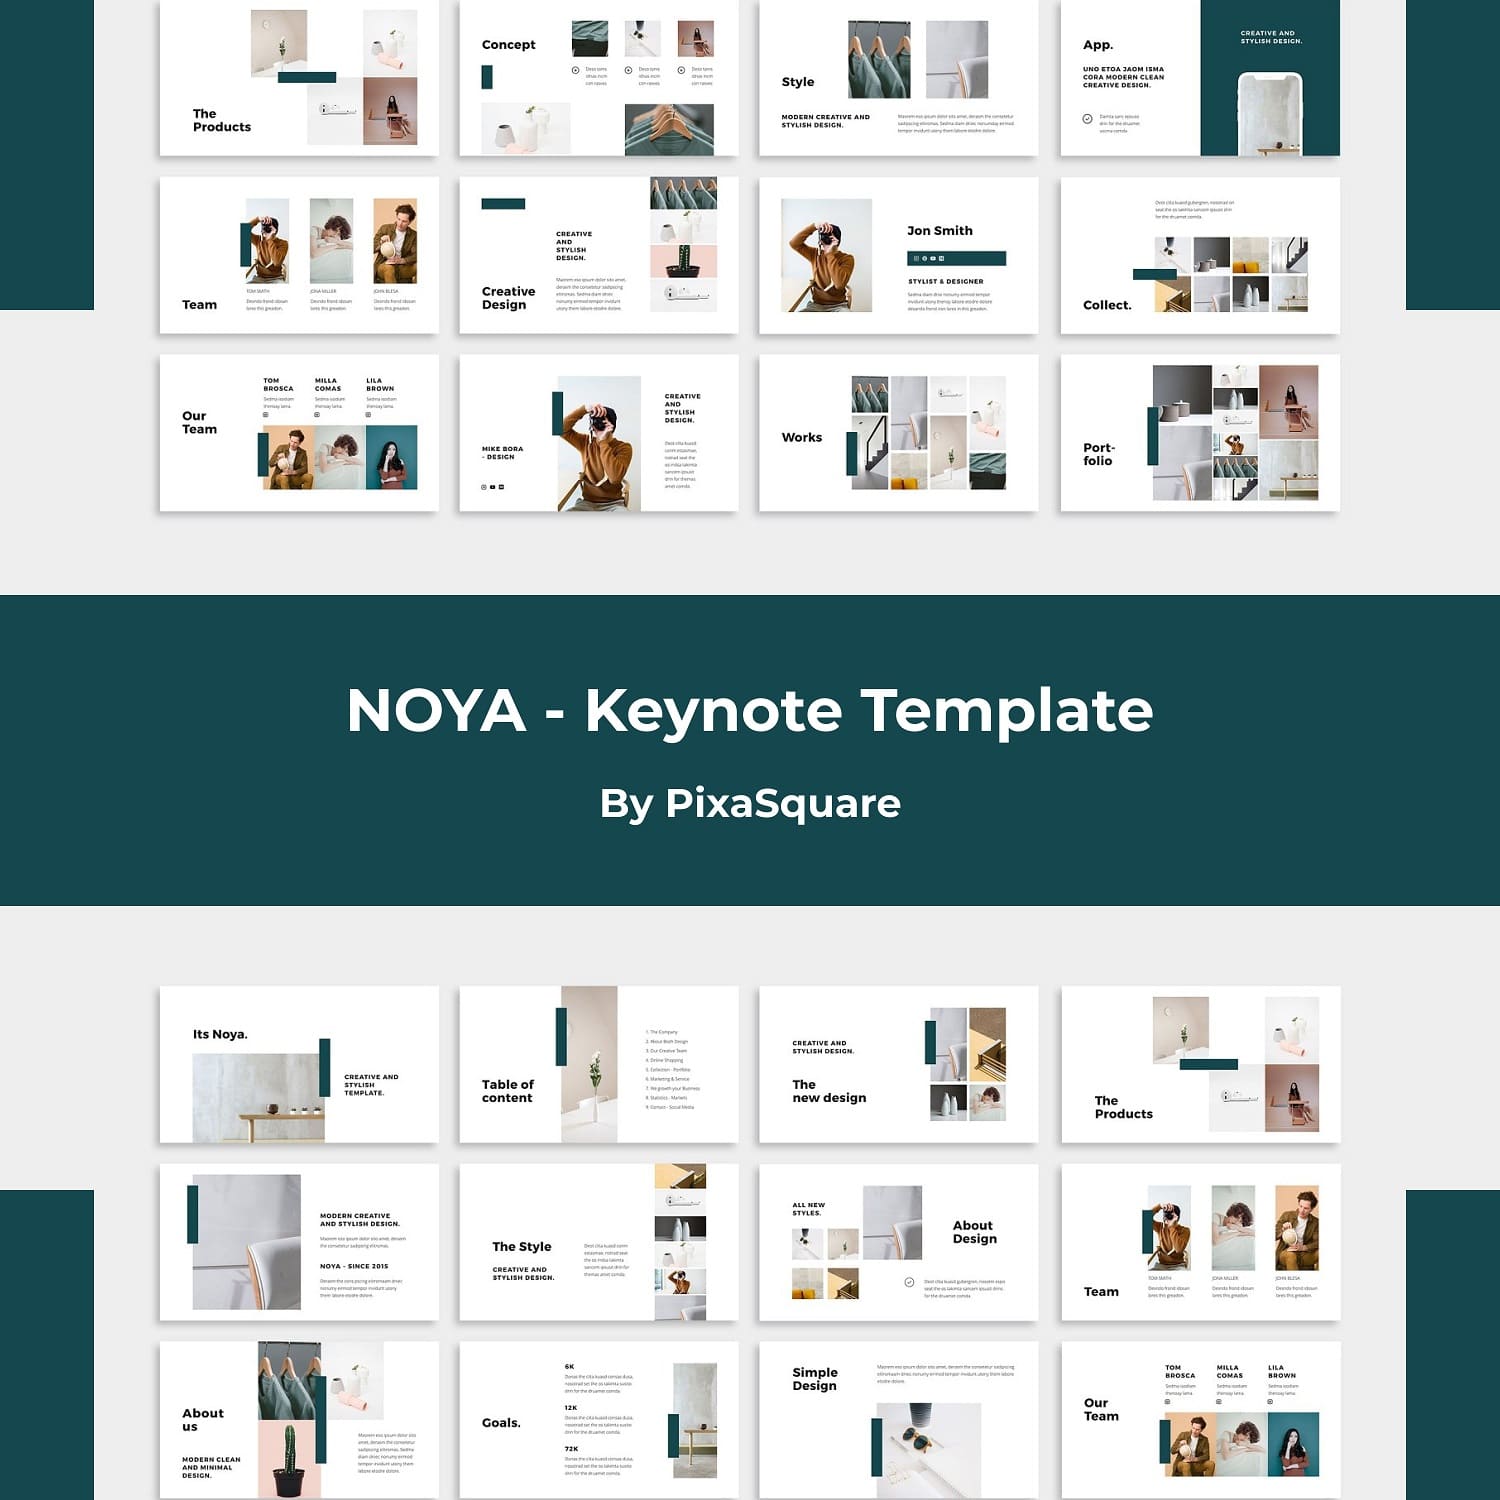 Noya - Keynote Template by PixaSquare.